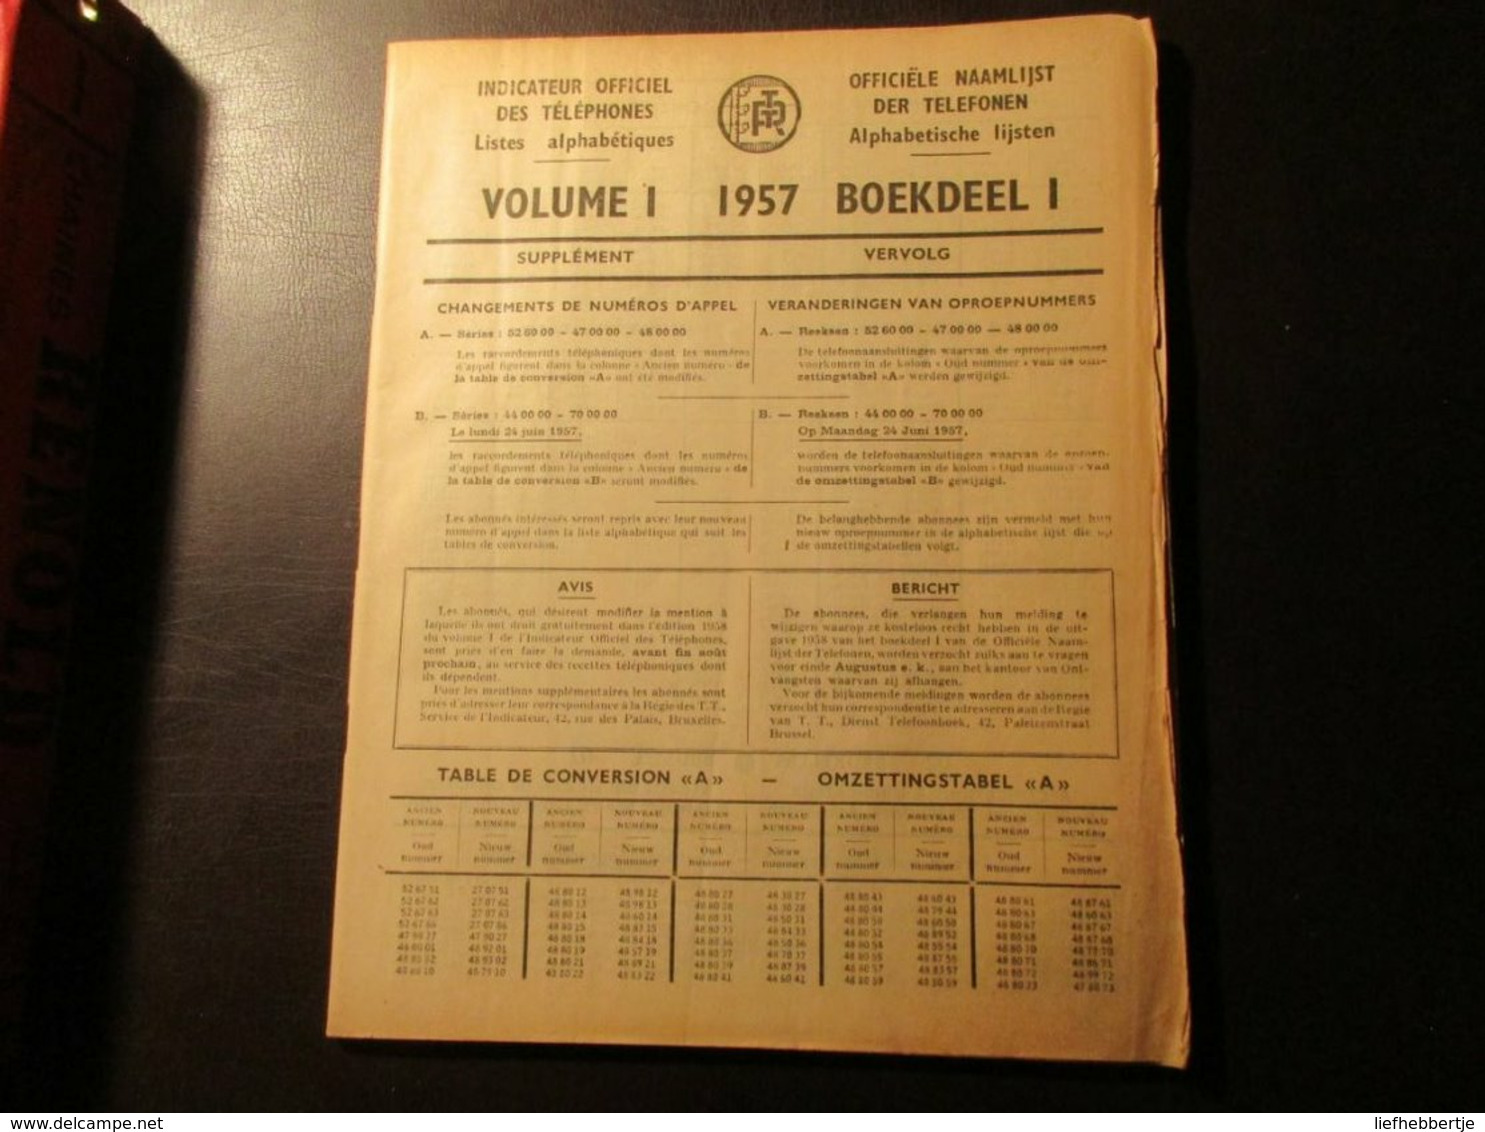 Officiële naamlijst der telefonen - Indicateur ... téléphones  = Brussel / Bruxelles  - telefoonboek - adresboek  1957